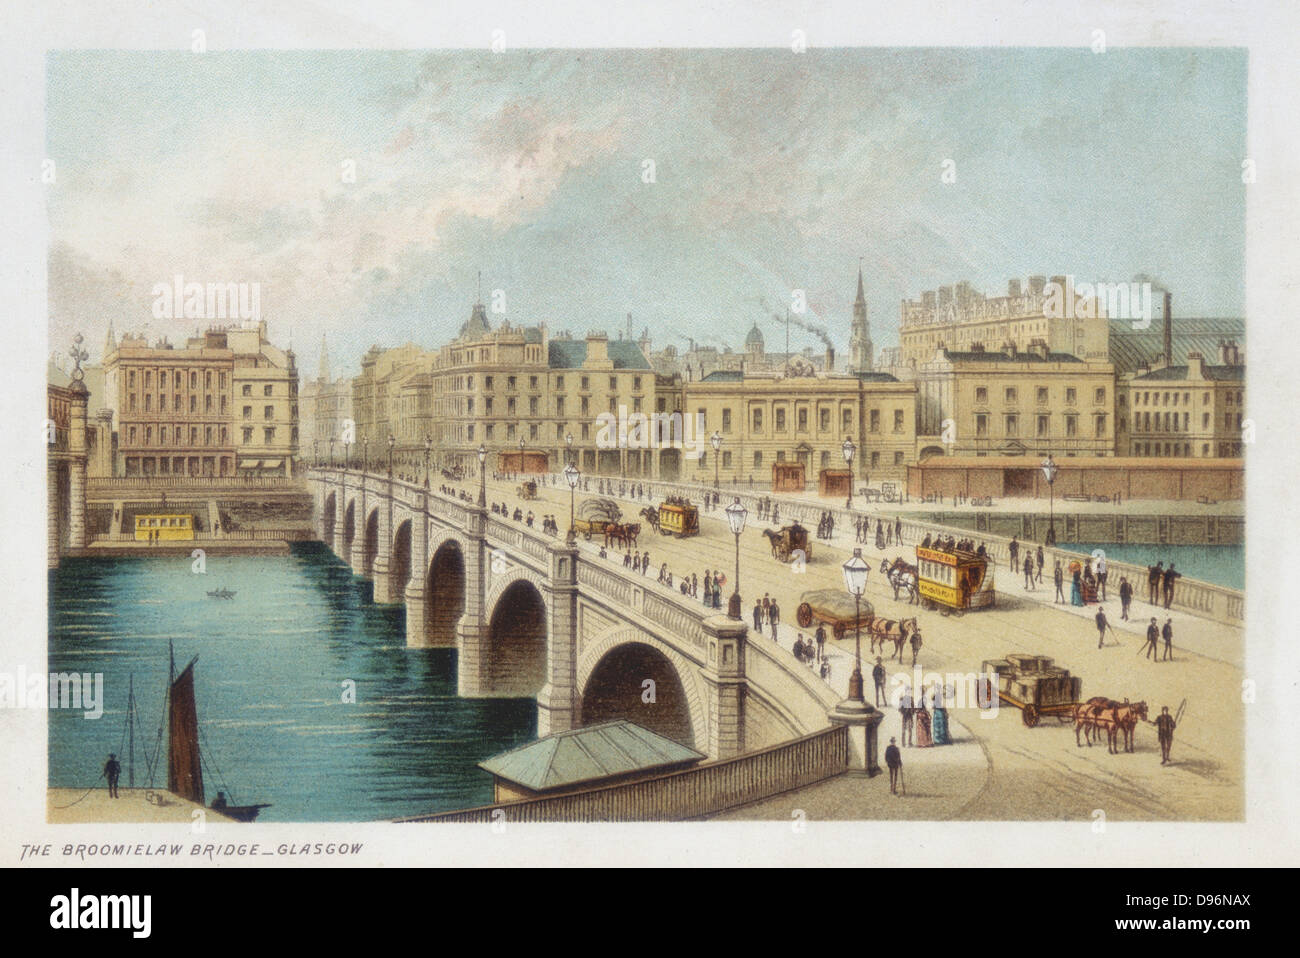 Thomas Telford's (1757-1834) Brücke über den Clyde an Broomielaw, Glasgow. Seine letzte steinerne Brücke, 18. März 1833 begonnen, eröffnete am 1. Januar 1836. Pferd Straßenbahnen Kreuzung Brücke. Chromolithograph veröffentlicht 1891. Stockfoto